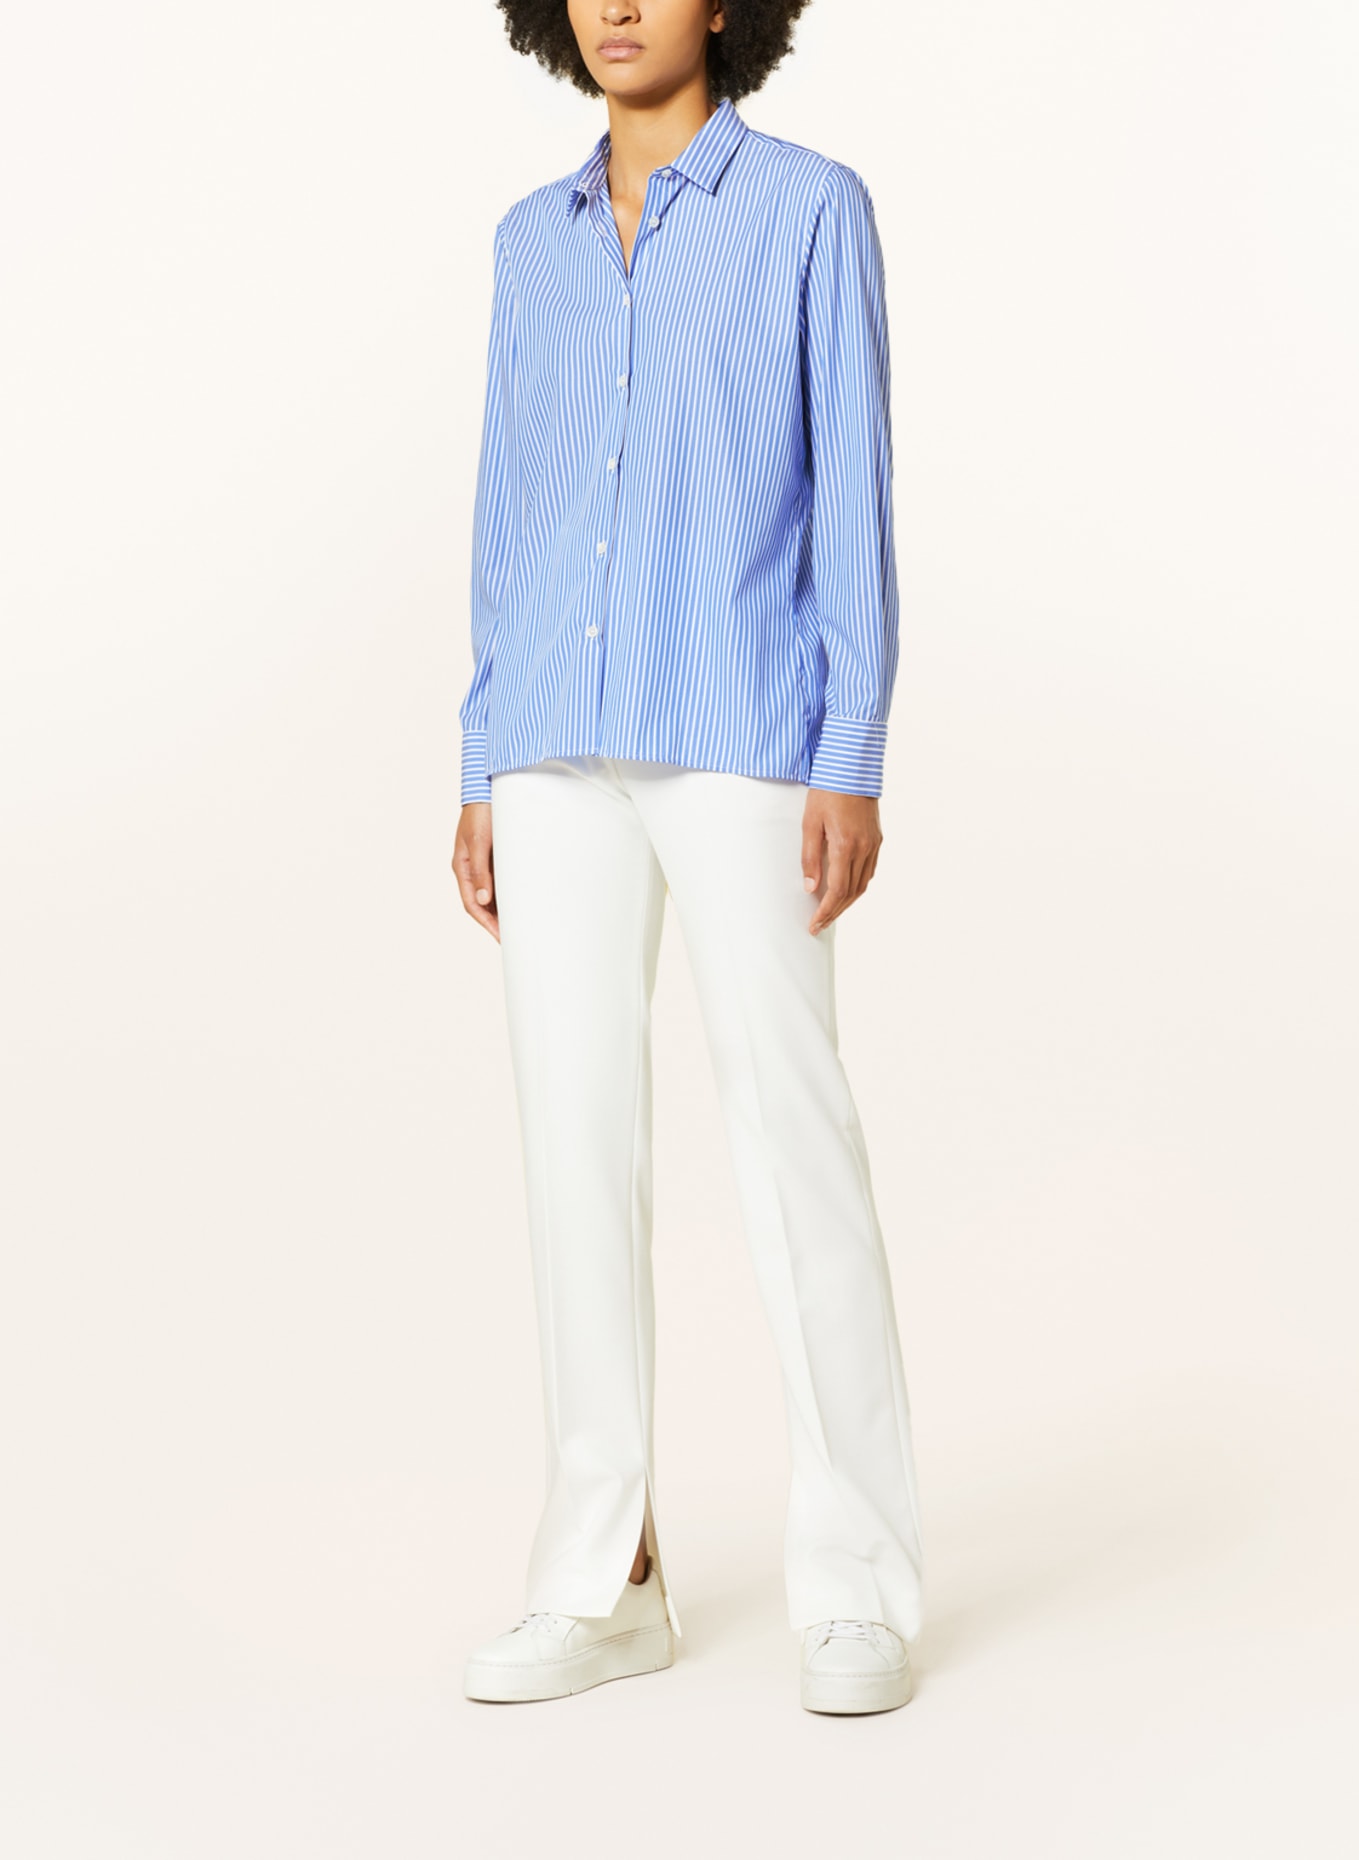 ROBERT FRIEDMAN Shirt blouse ANDREA in white/ blue